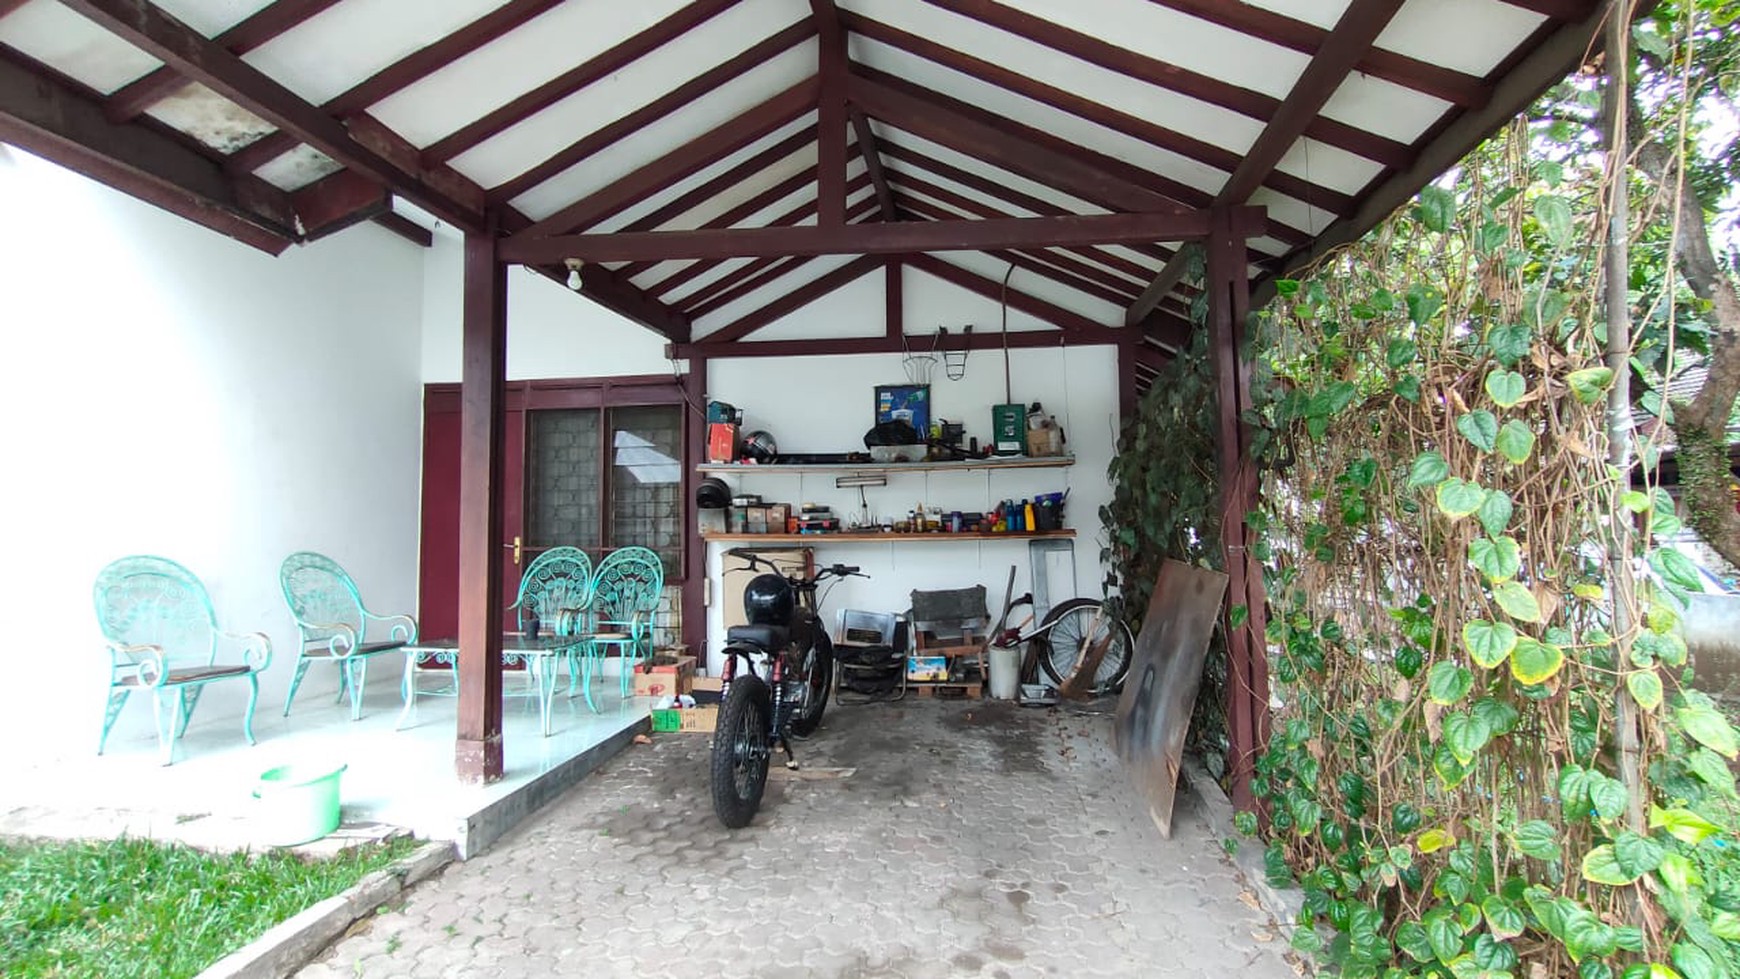 Rumah Asri & Nyaman di Kompo Permai Bandung